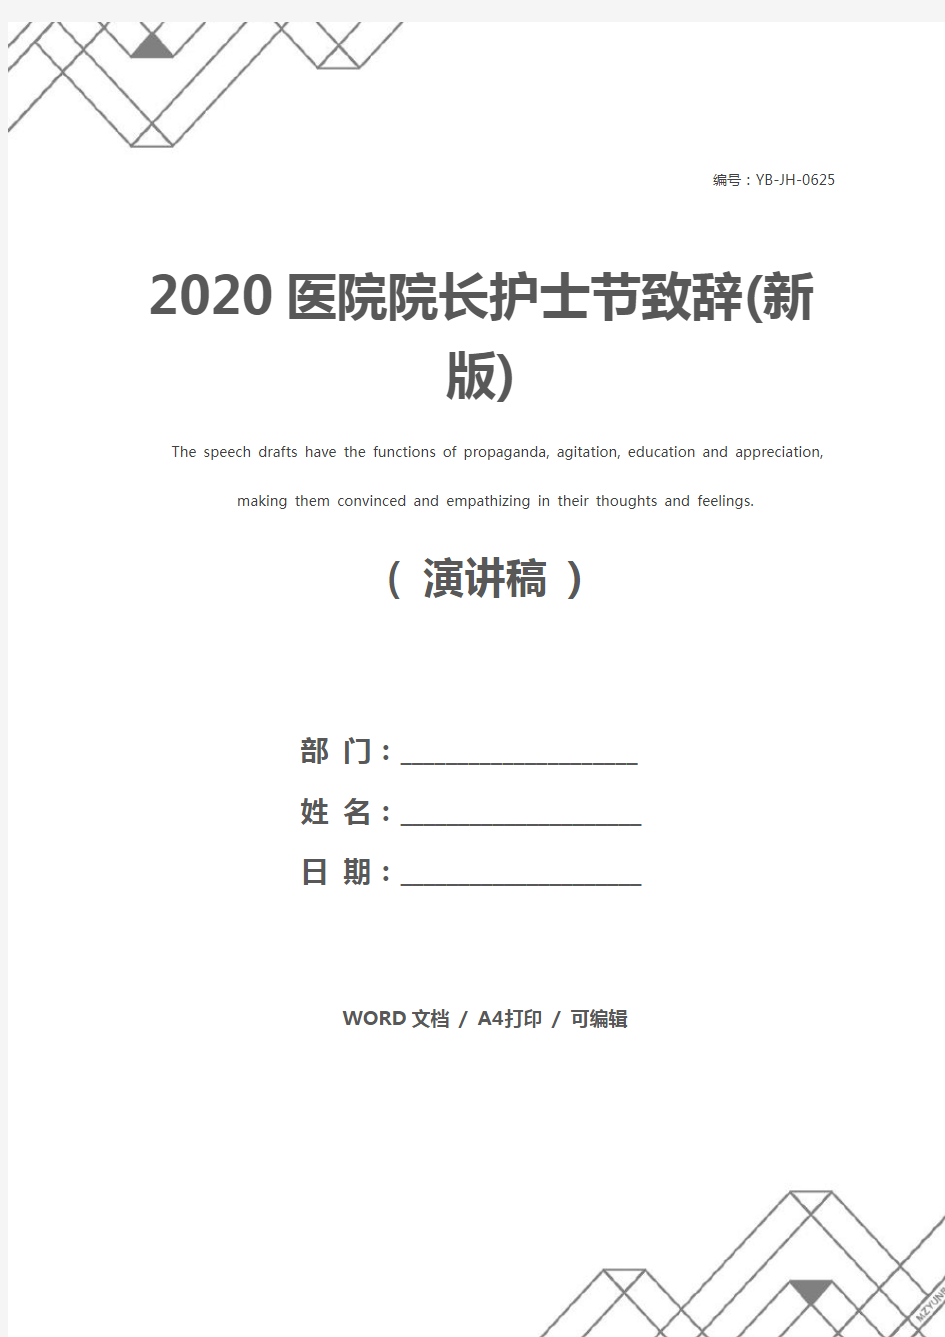 2020医院院长护士节致辞(新版)